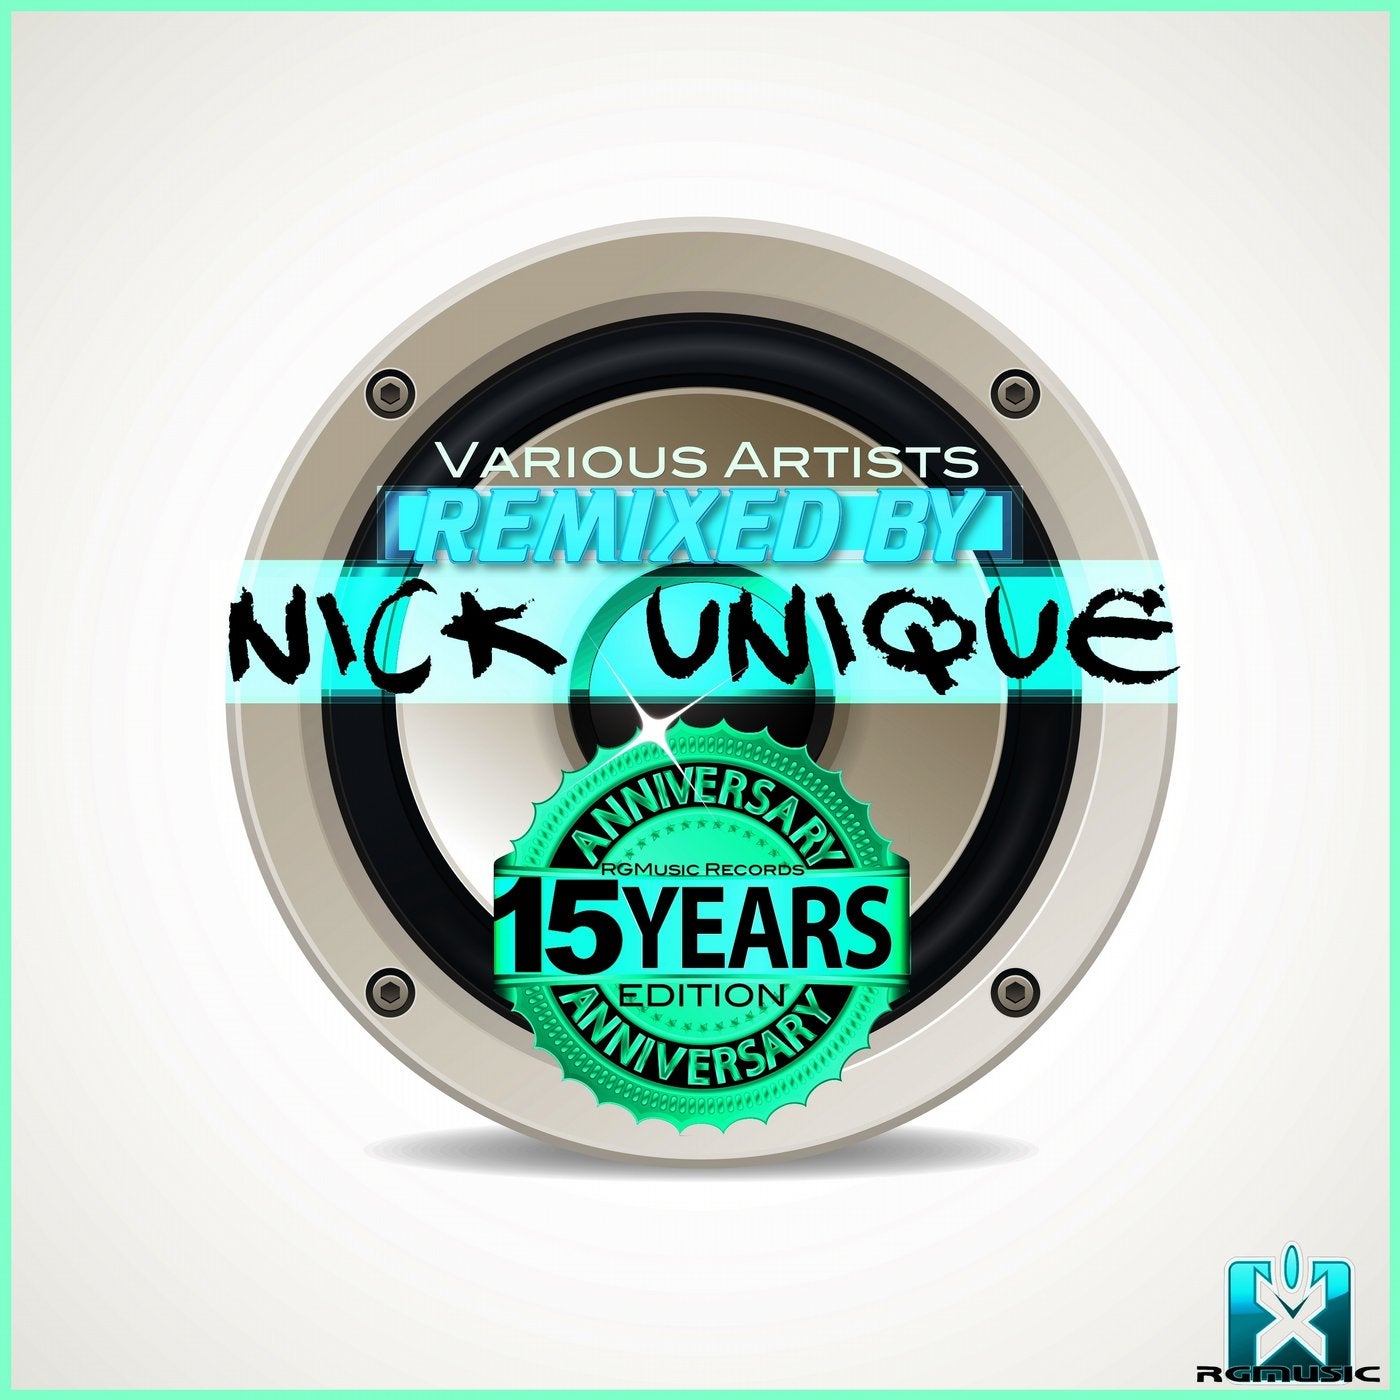 Rgmusic Records 15 Years Anniversary Edition